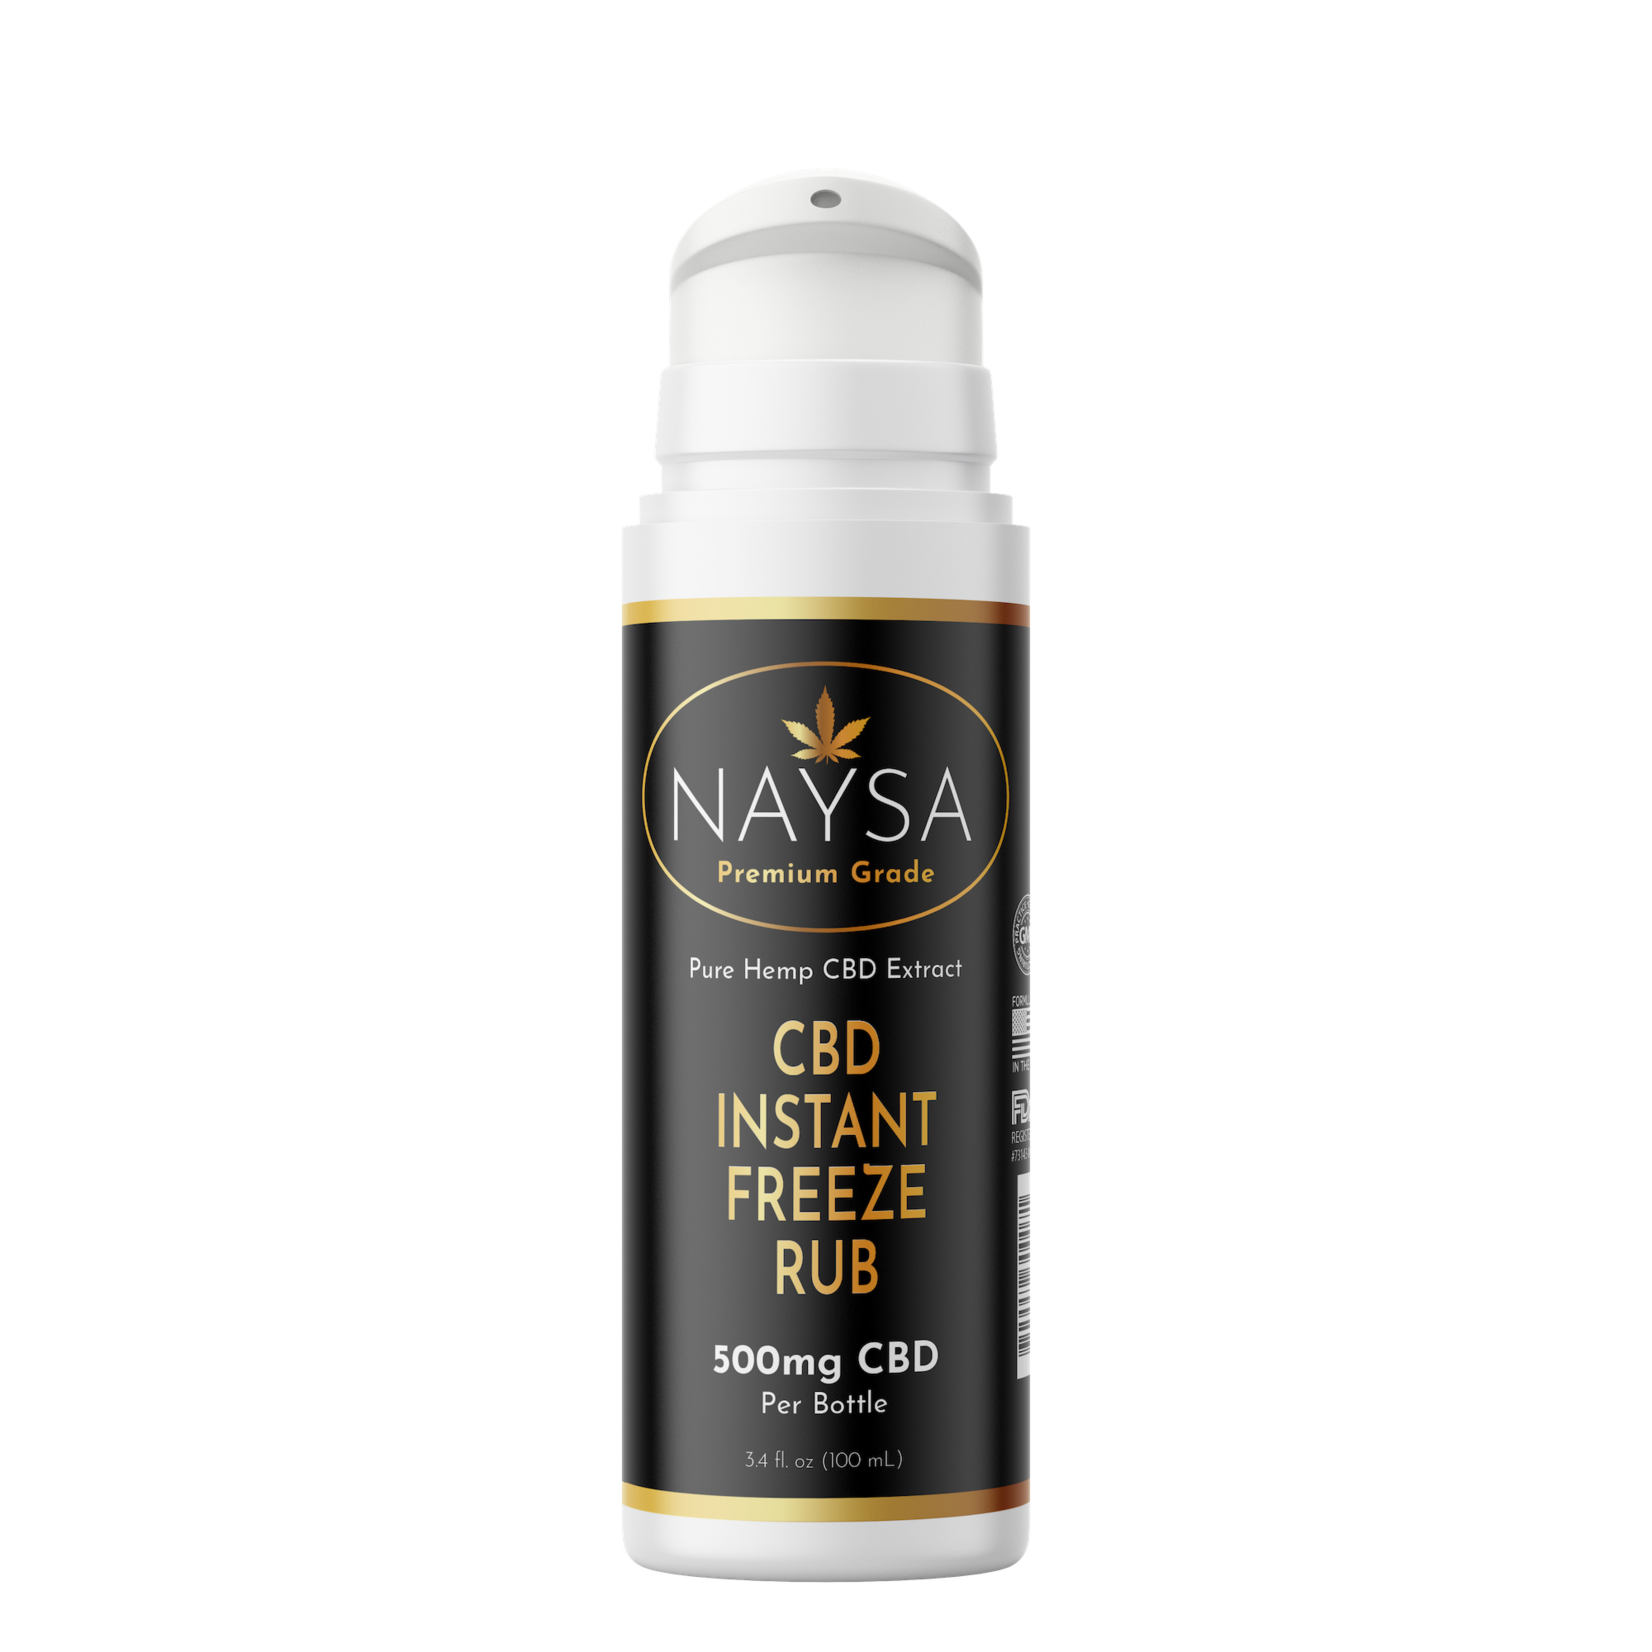 Naysa Instant Freeze Rub with 500mg of CBD (NAYSA)